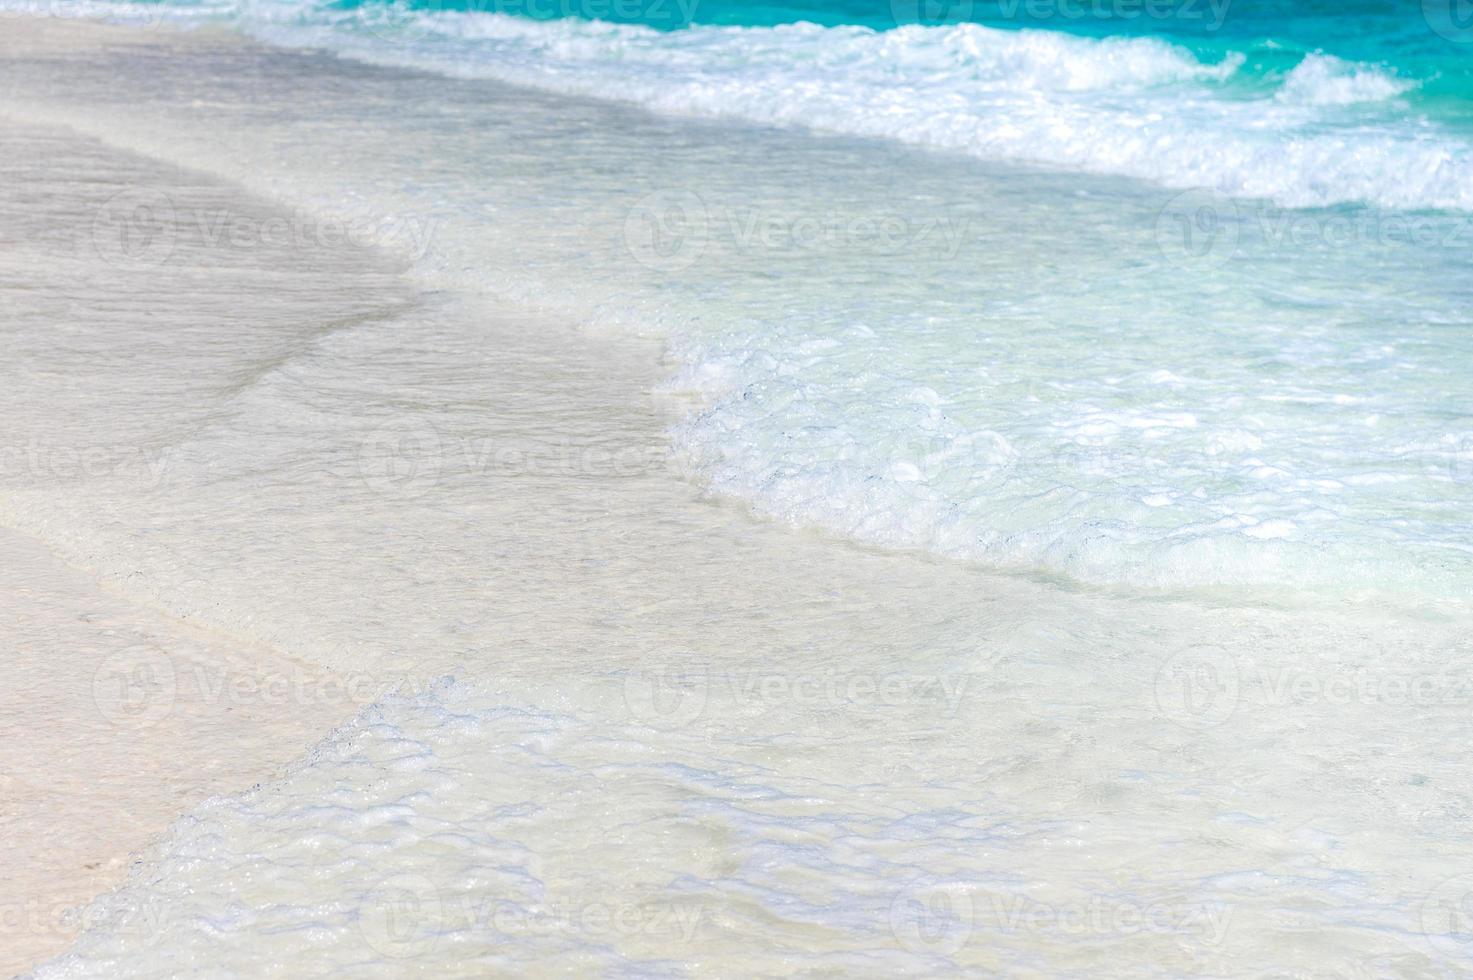 olas del mar claro y playa de arena blanca en verano. foto